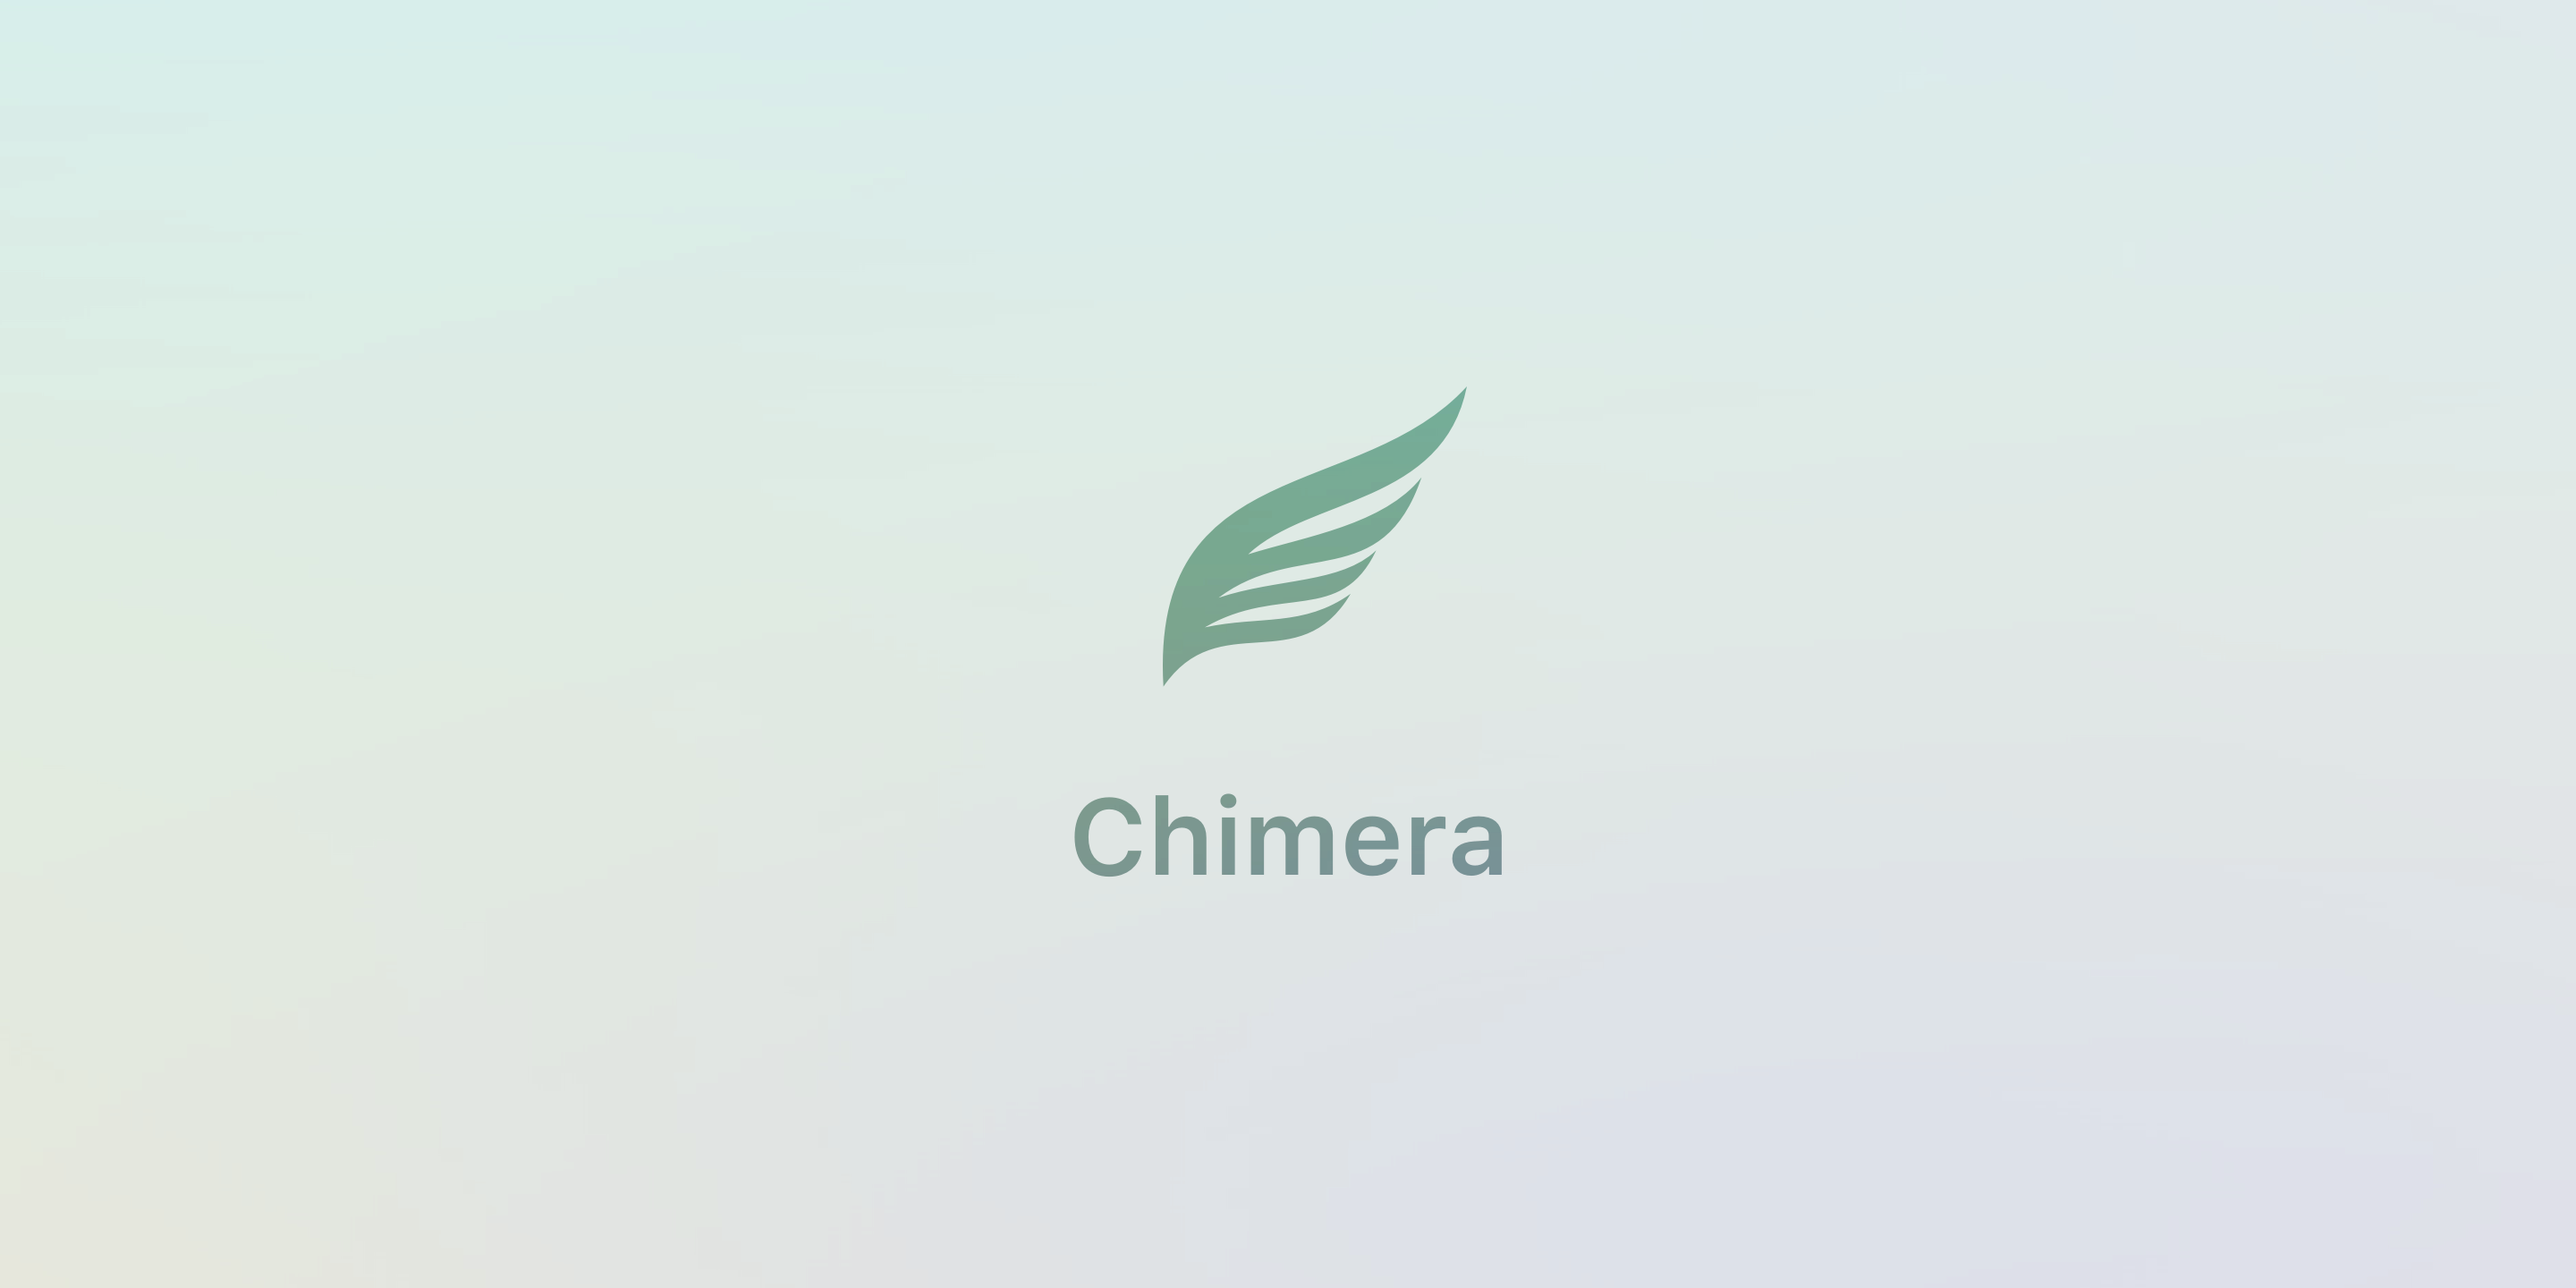 Pembaruan Chimera v1.4.0 memperkenalkan peningkatan stabilitas melalui dukungan libhooker terbatas